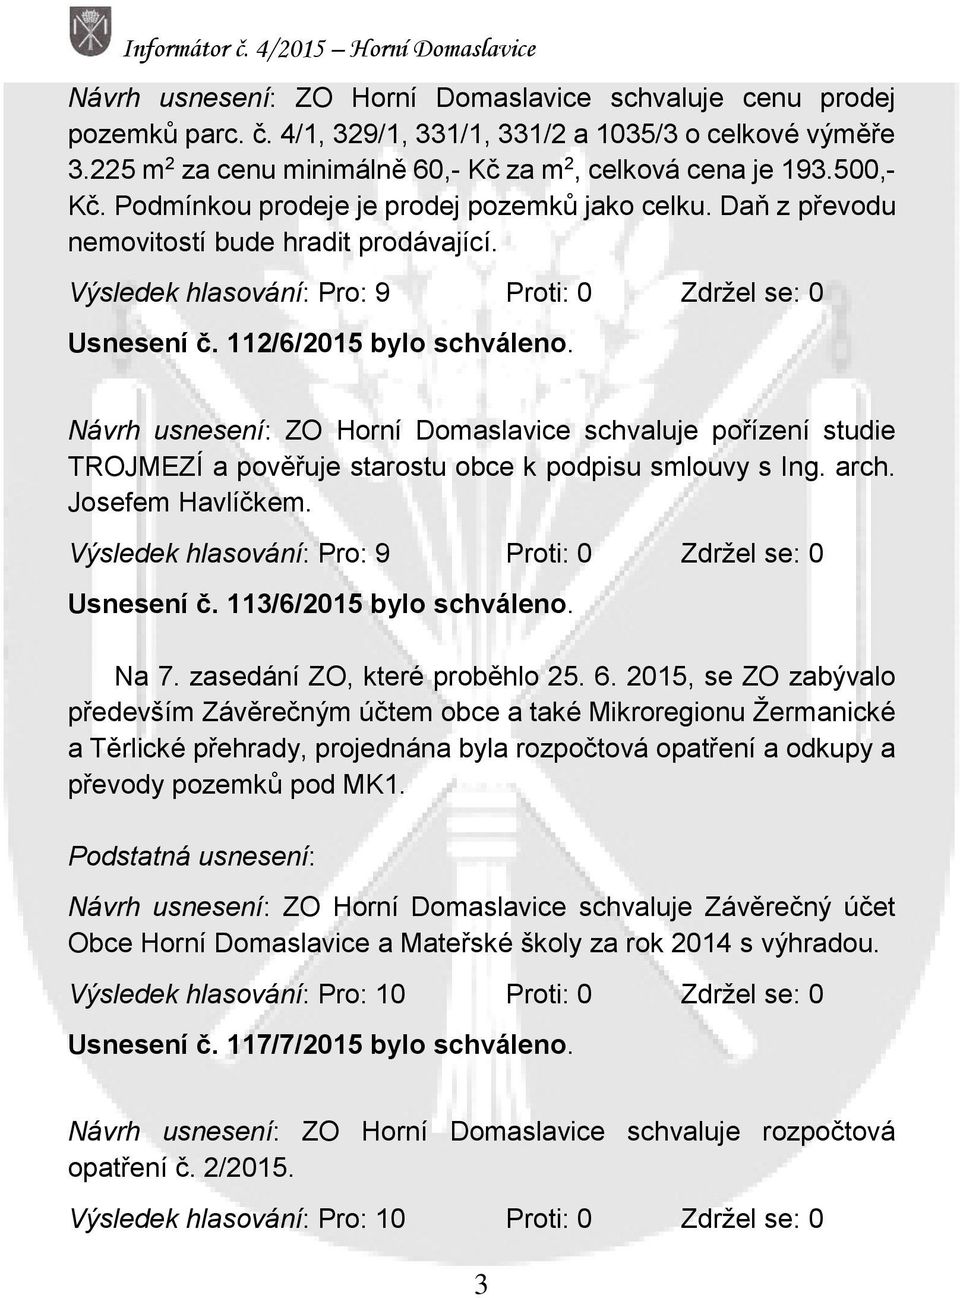 Návrh usnesení: ZO Horní Domaslavice schvaluje pořízení studie TROJMEZÍ a pověřuje starostu obce k podpisu smlouvy s Ing. arch. Josefem Havlíčkem.